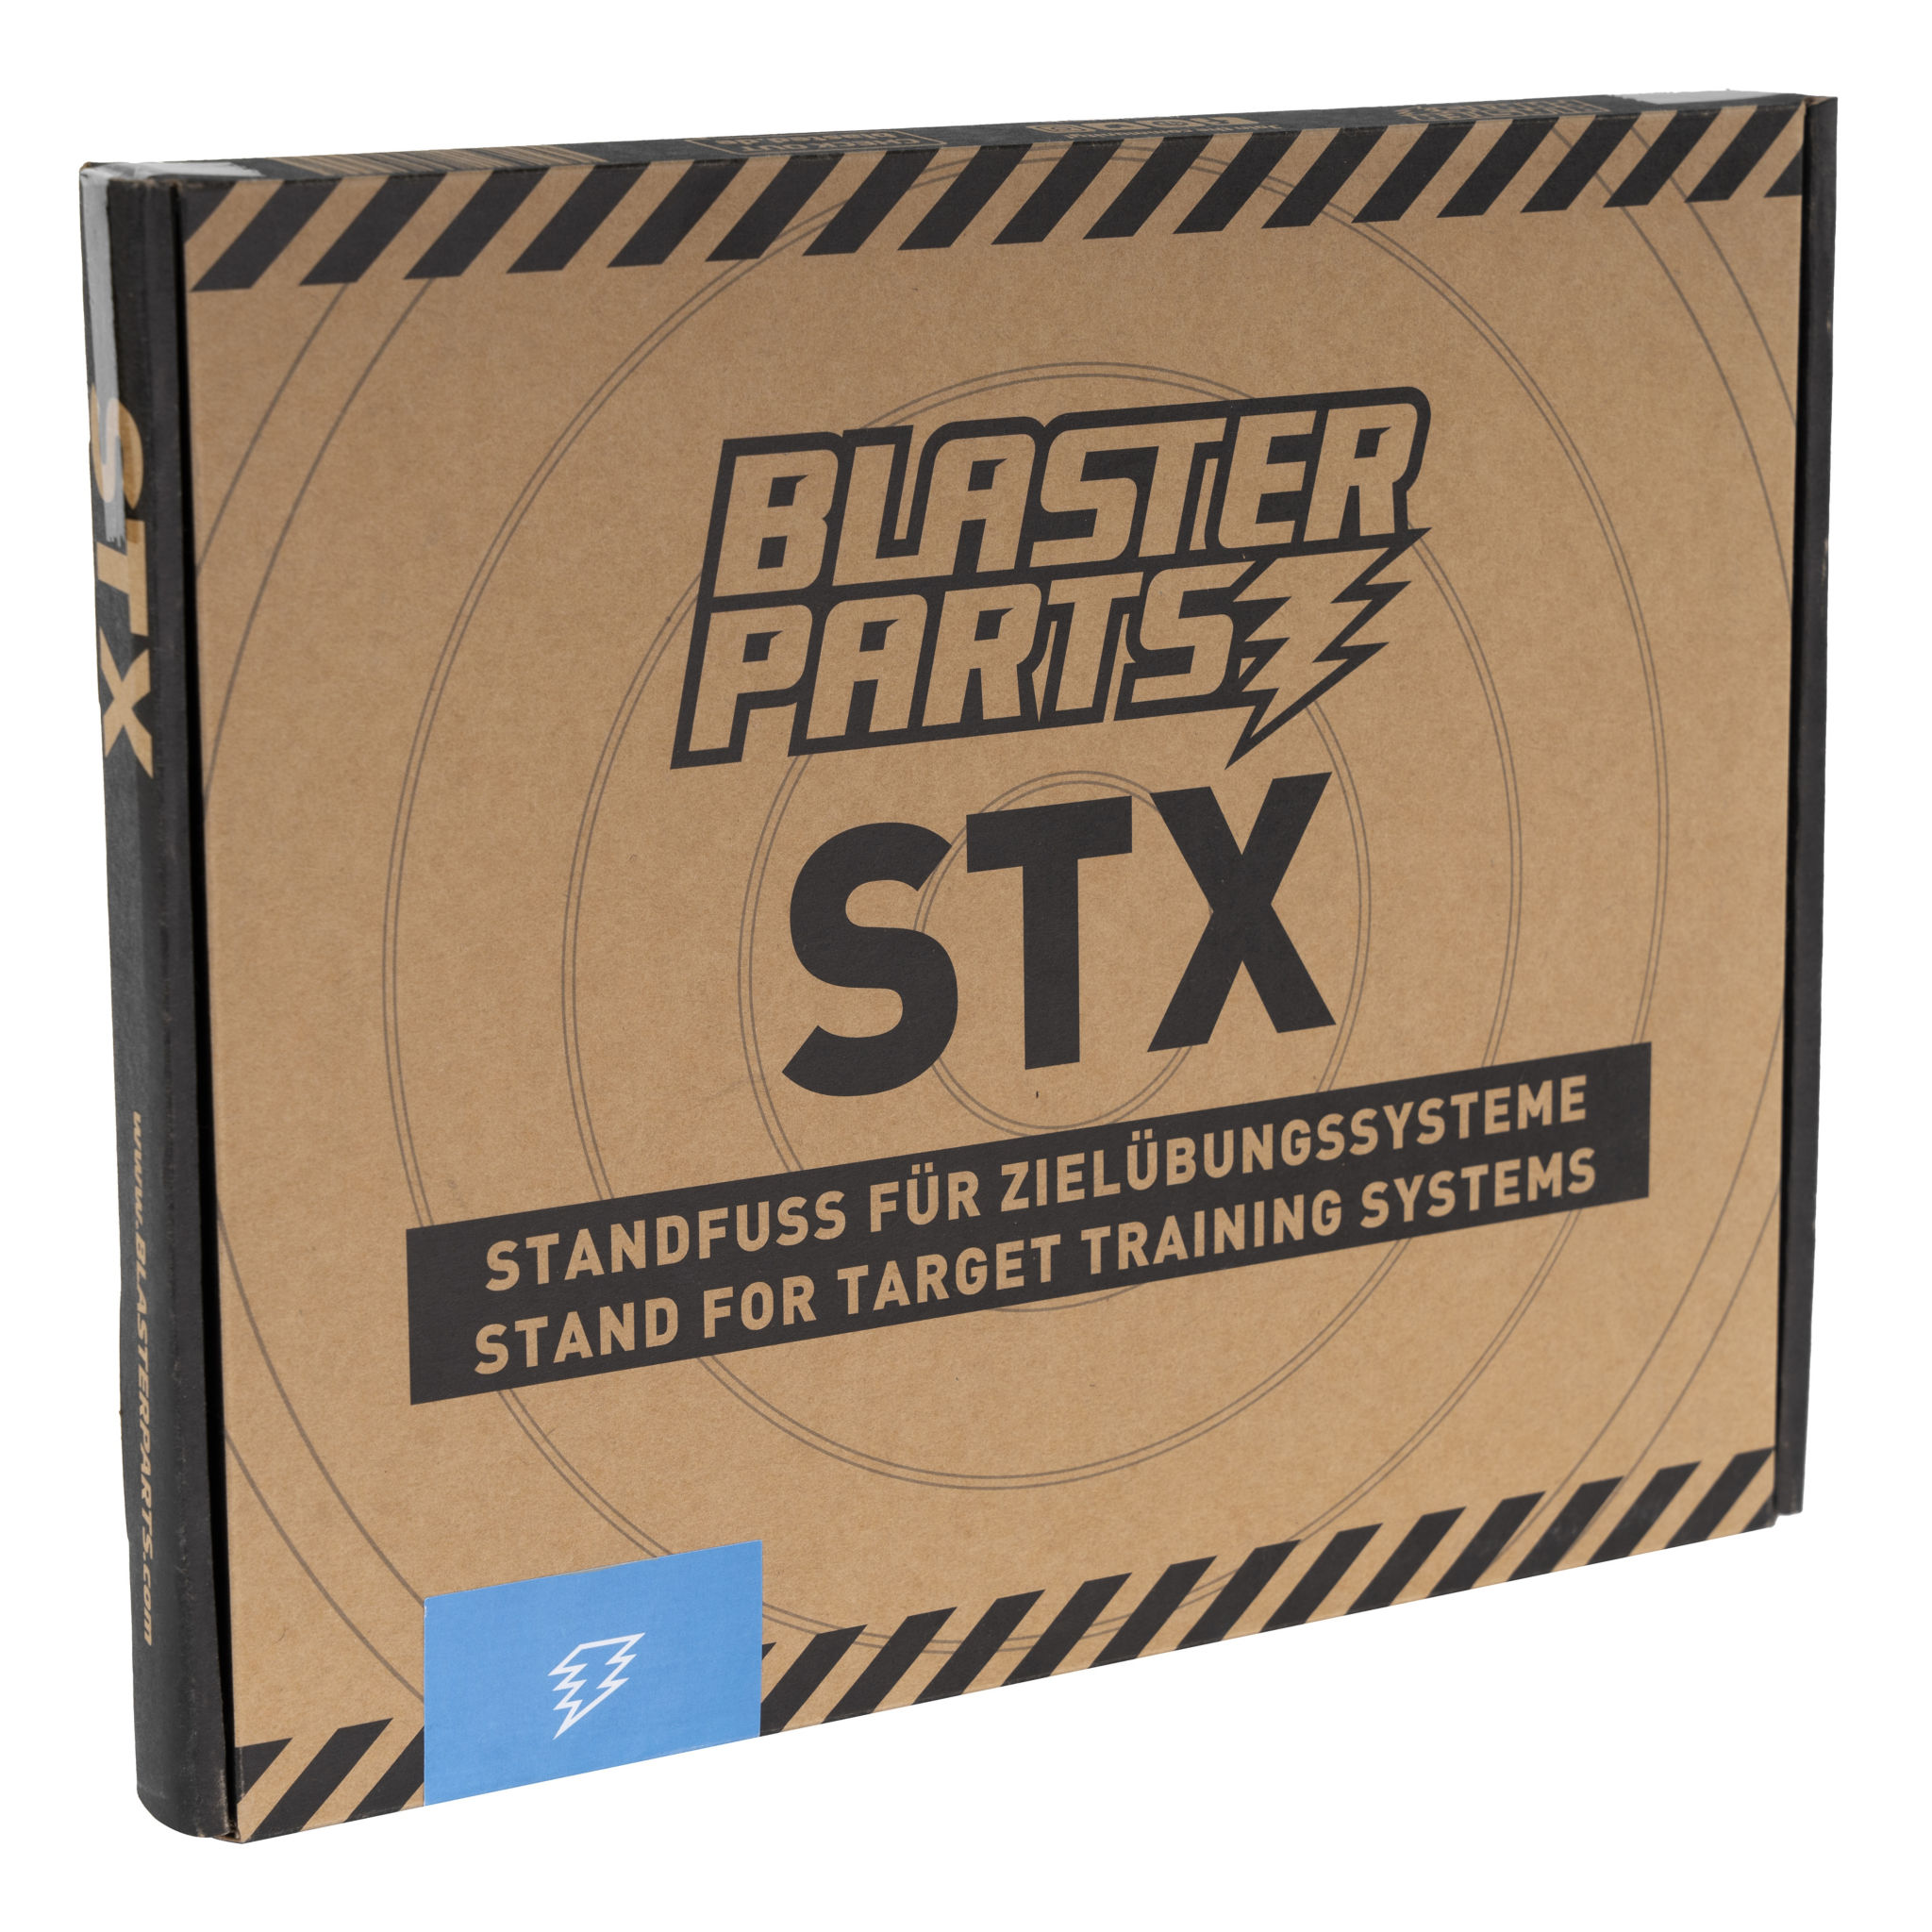 Elektronische Zielscheibe mit Standfuß für Nerf und Dartblaster - DX1/STX